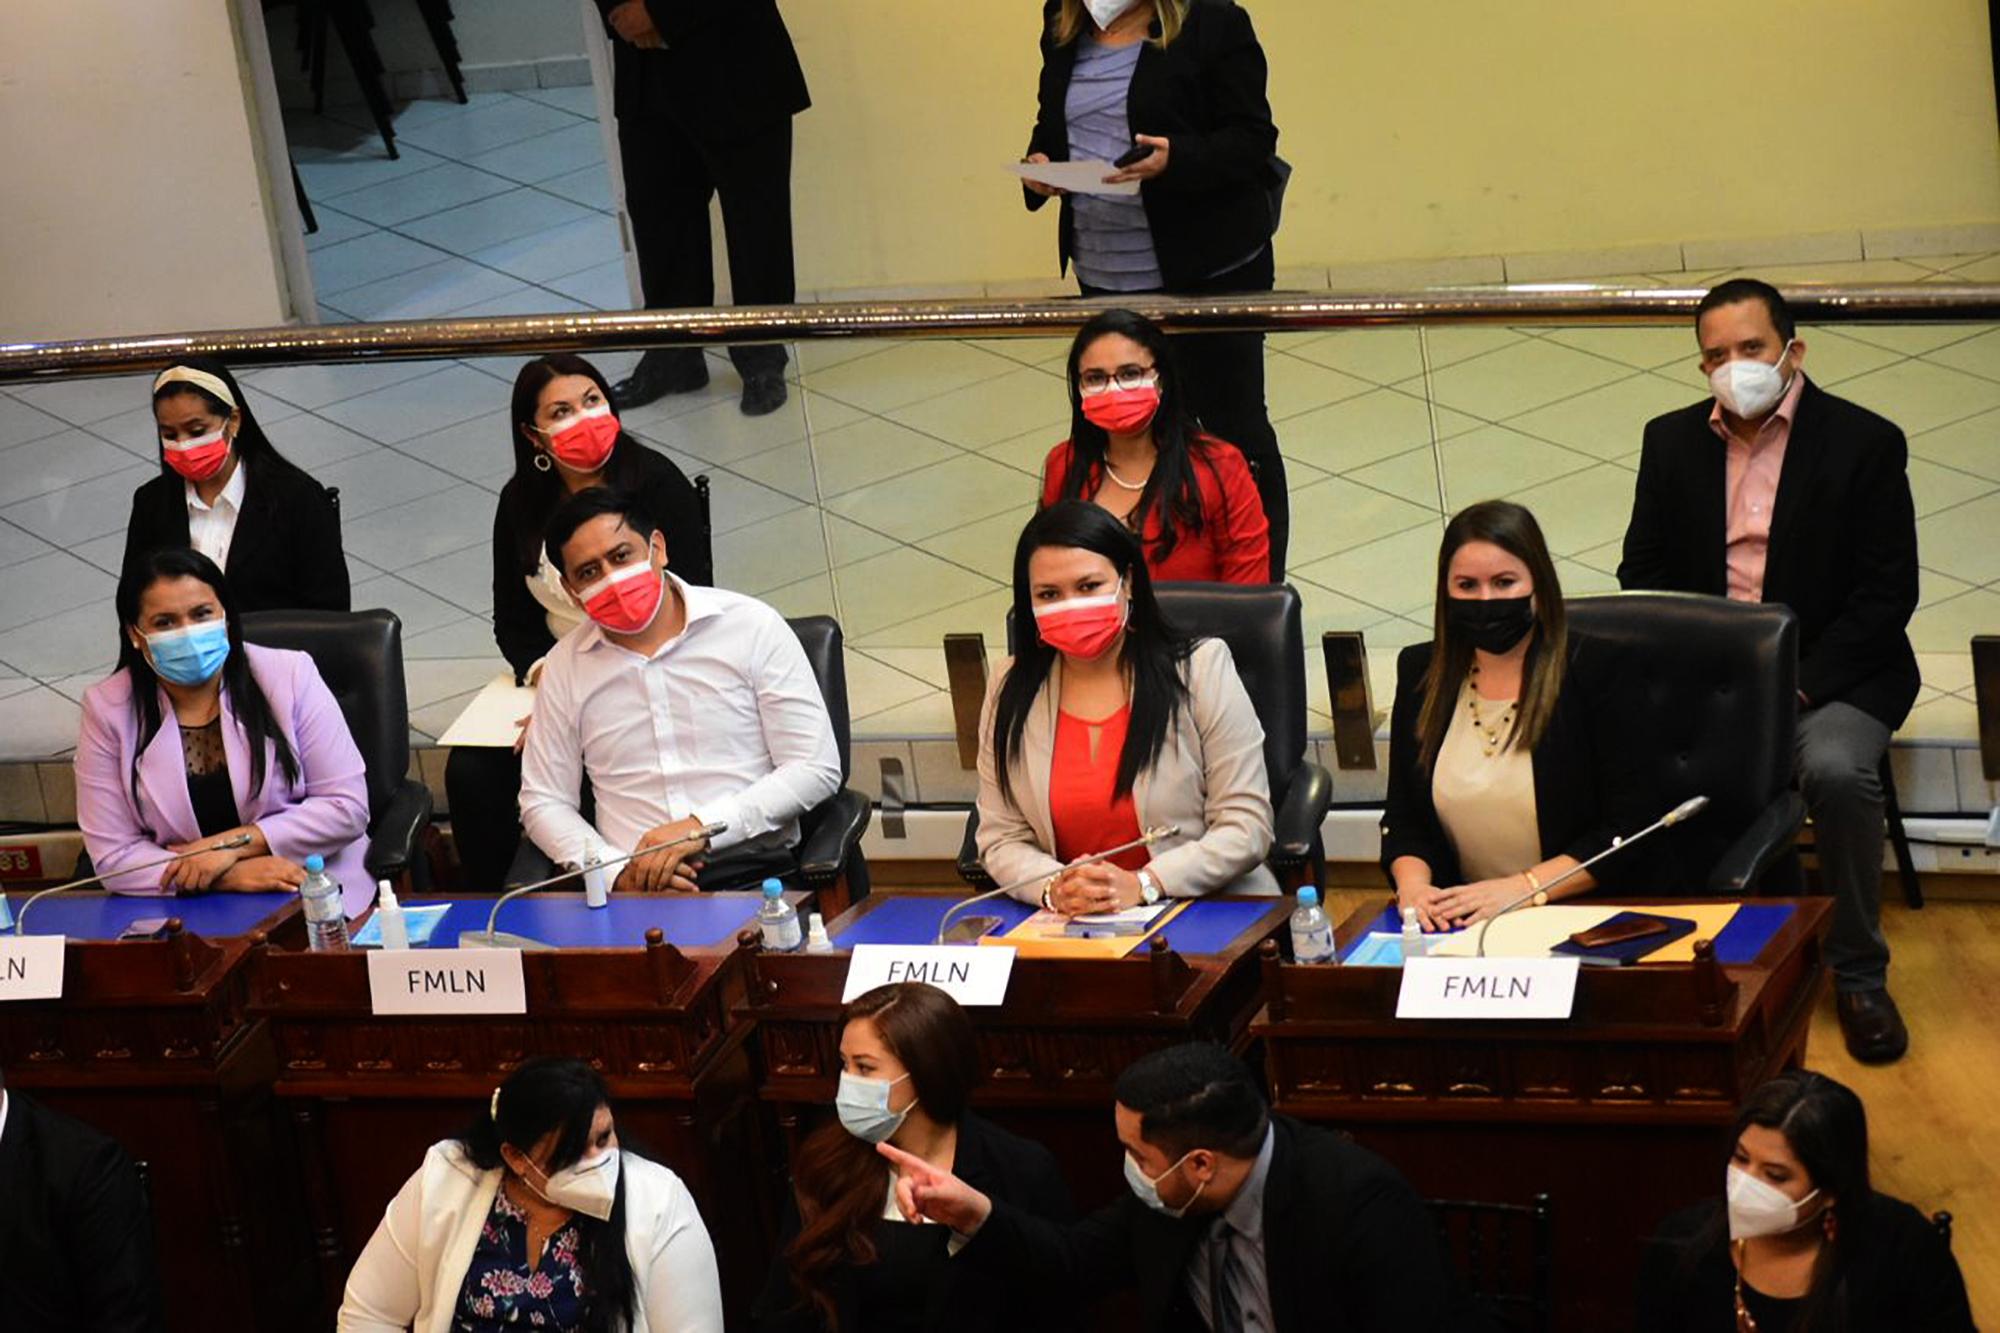 La actual bancada del FMLN. De izquierda a derecha: Marleni Funes, Jaime Guevara, Anabel Belloso y Dina Argueta. Foto: redes sociales de la diputada Marleni Funes. 